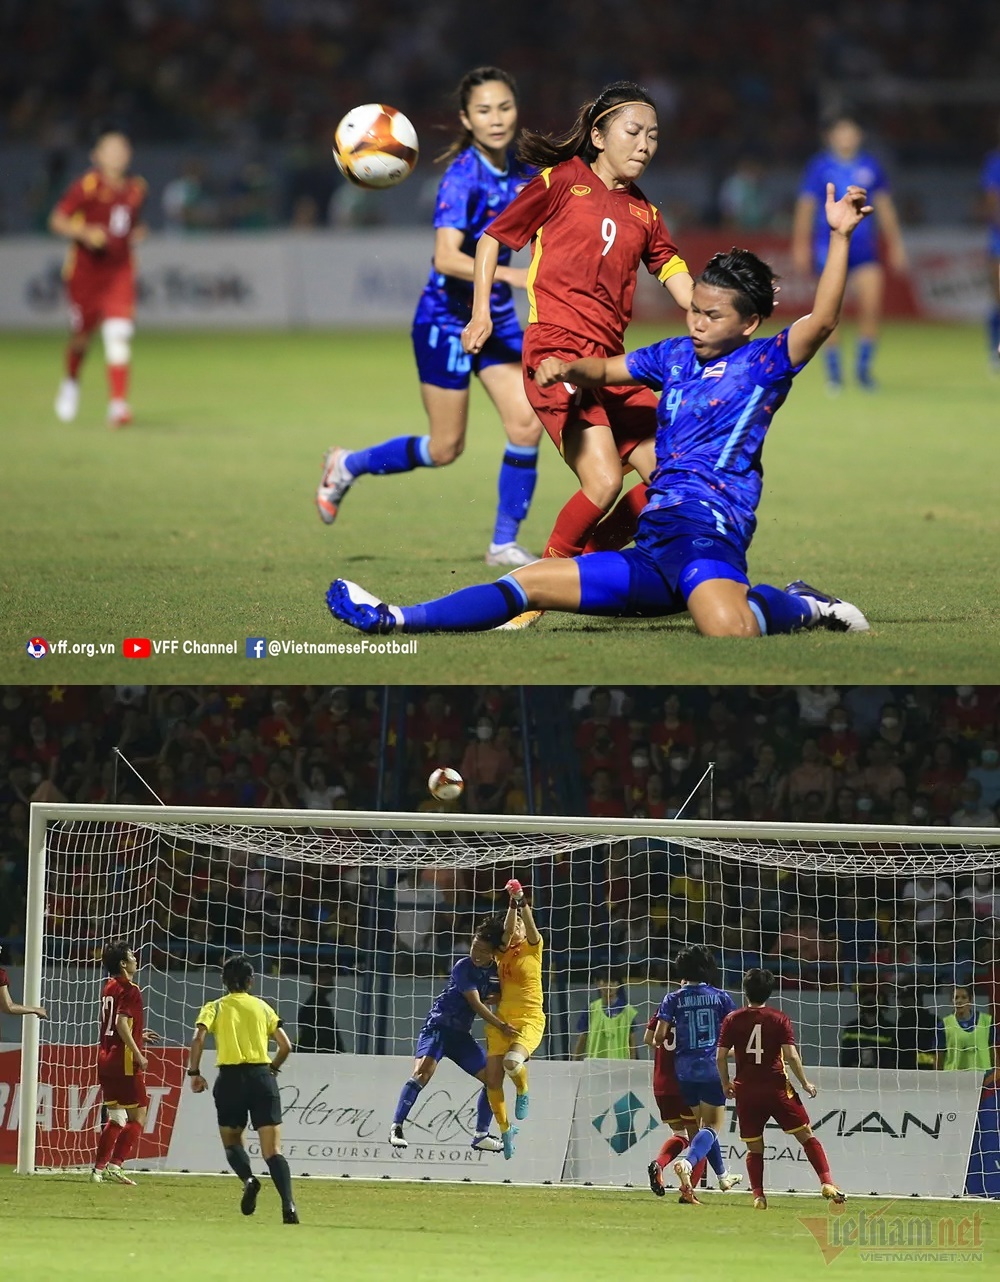  
Huỳnh Như và Kim Thanh chơi quá xuất sắc trong trận đấu này. (Ảnh: VFF/ Vietnamnet)